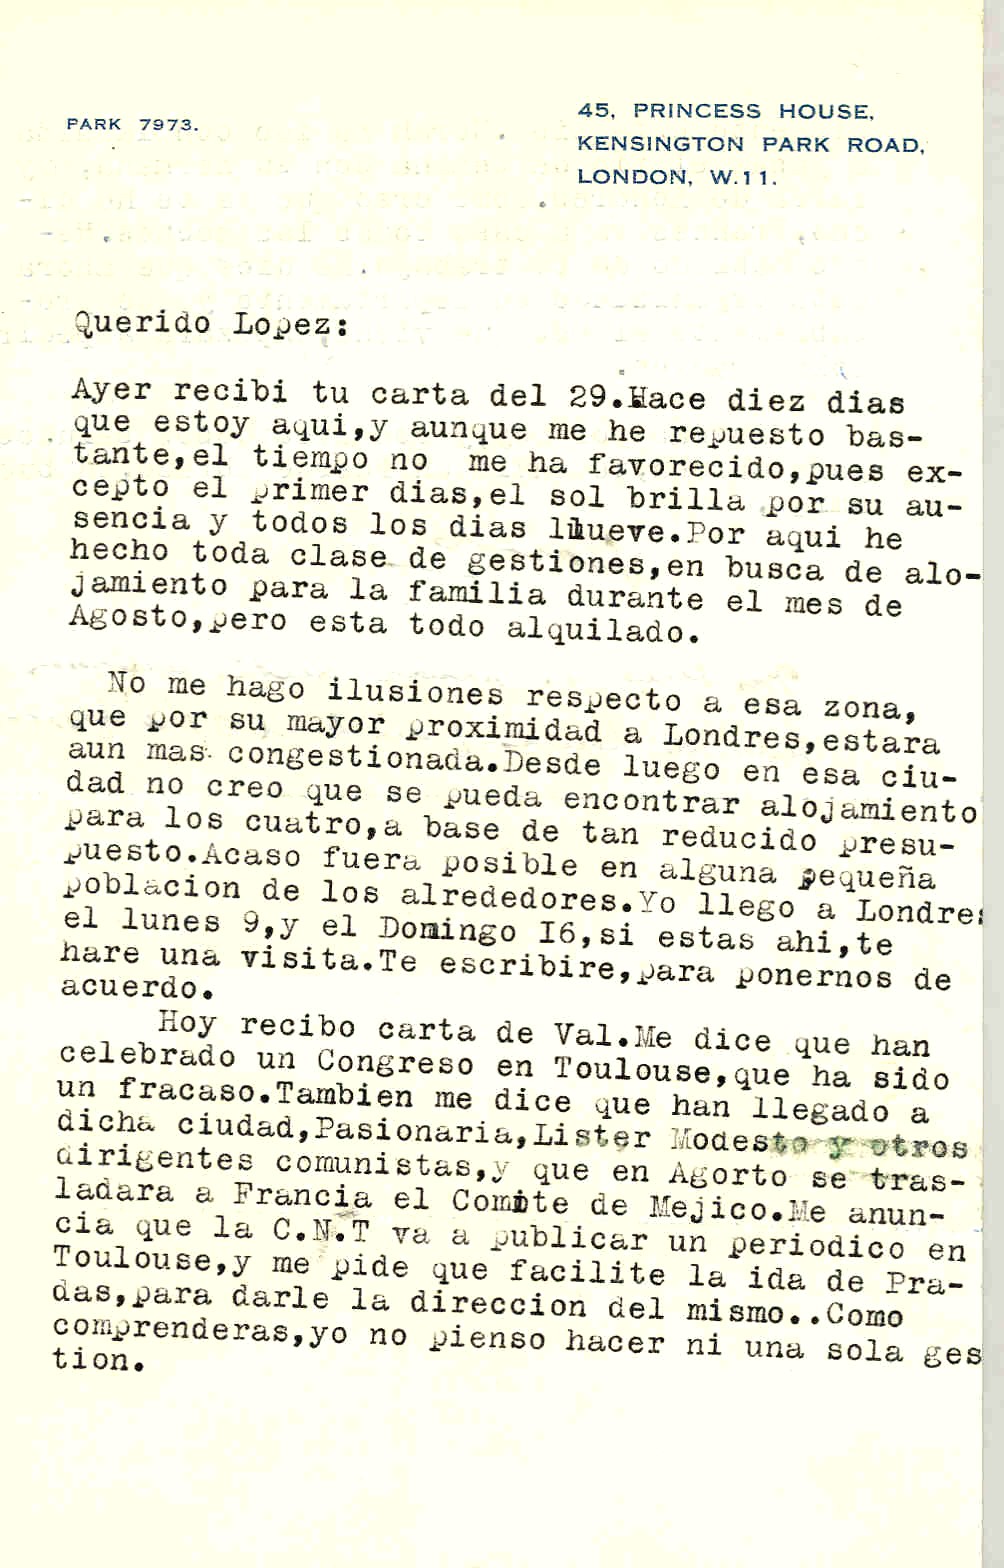 Carta de Segismundo Casado en la que habla de una carta de Val que habla del fracasado congreso celebrado en Toulouse y que se trasladará a Francia el comité de México y que se la CNT va a publicar un periódico en Toulouse.